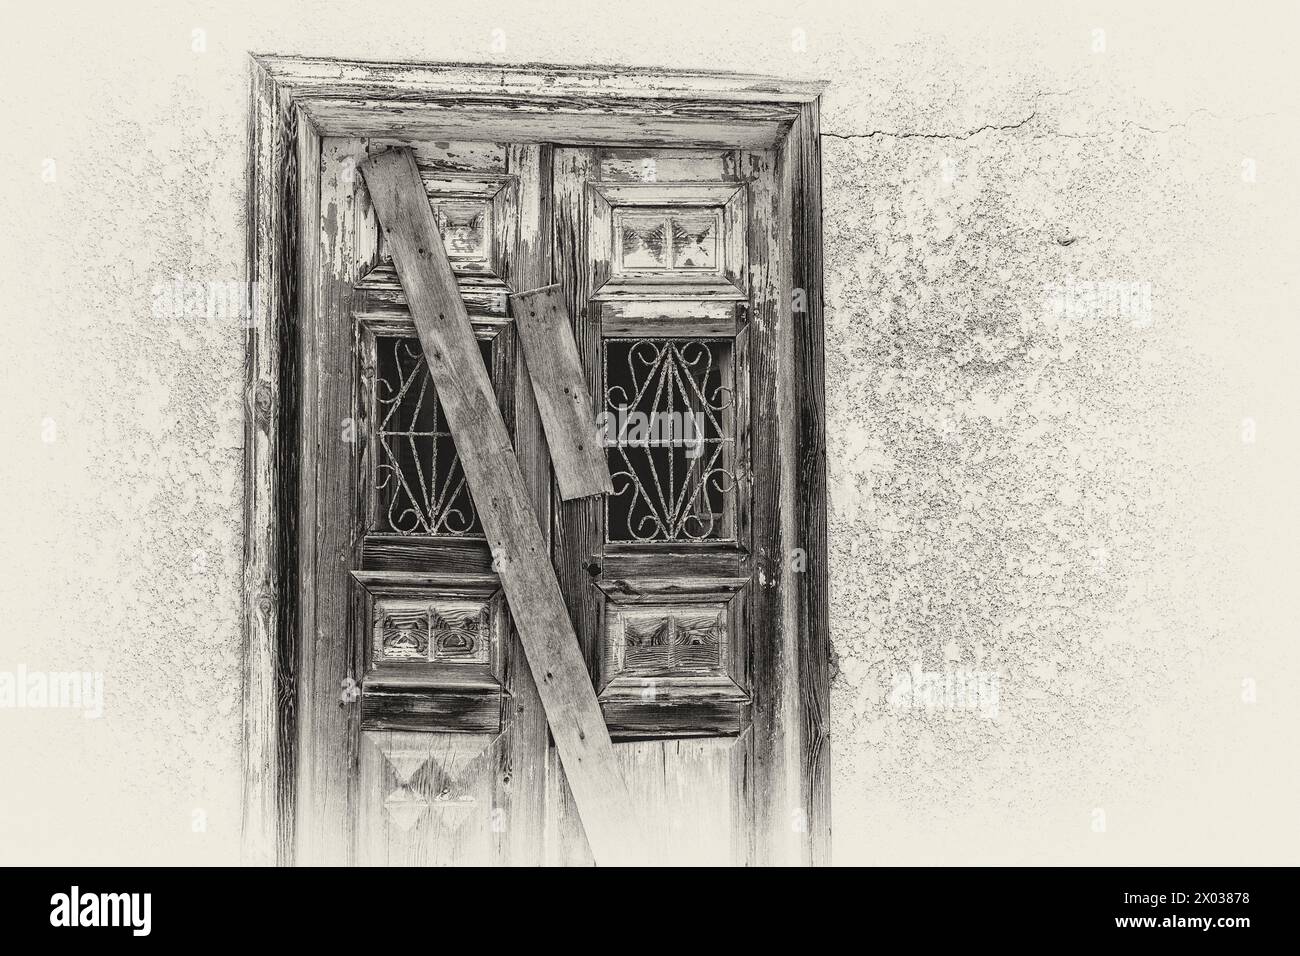 Une image filtrée monochrome de planches recouvrant une porte arborée sur une maison arabe abandonnée au moyen-Orient. Banque D'Images